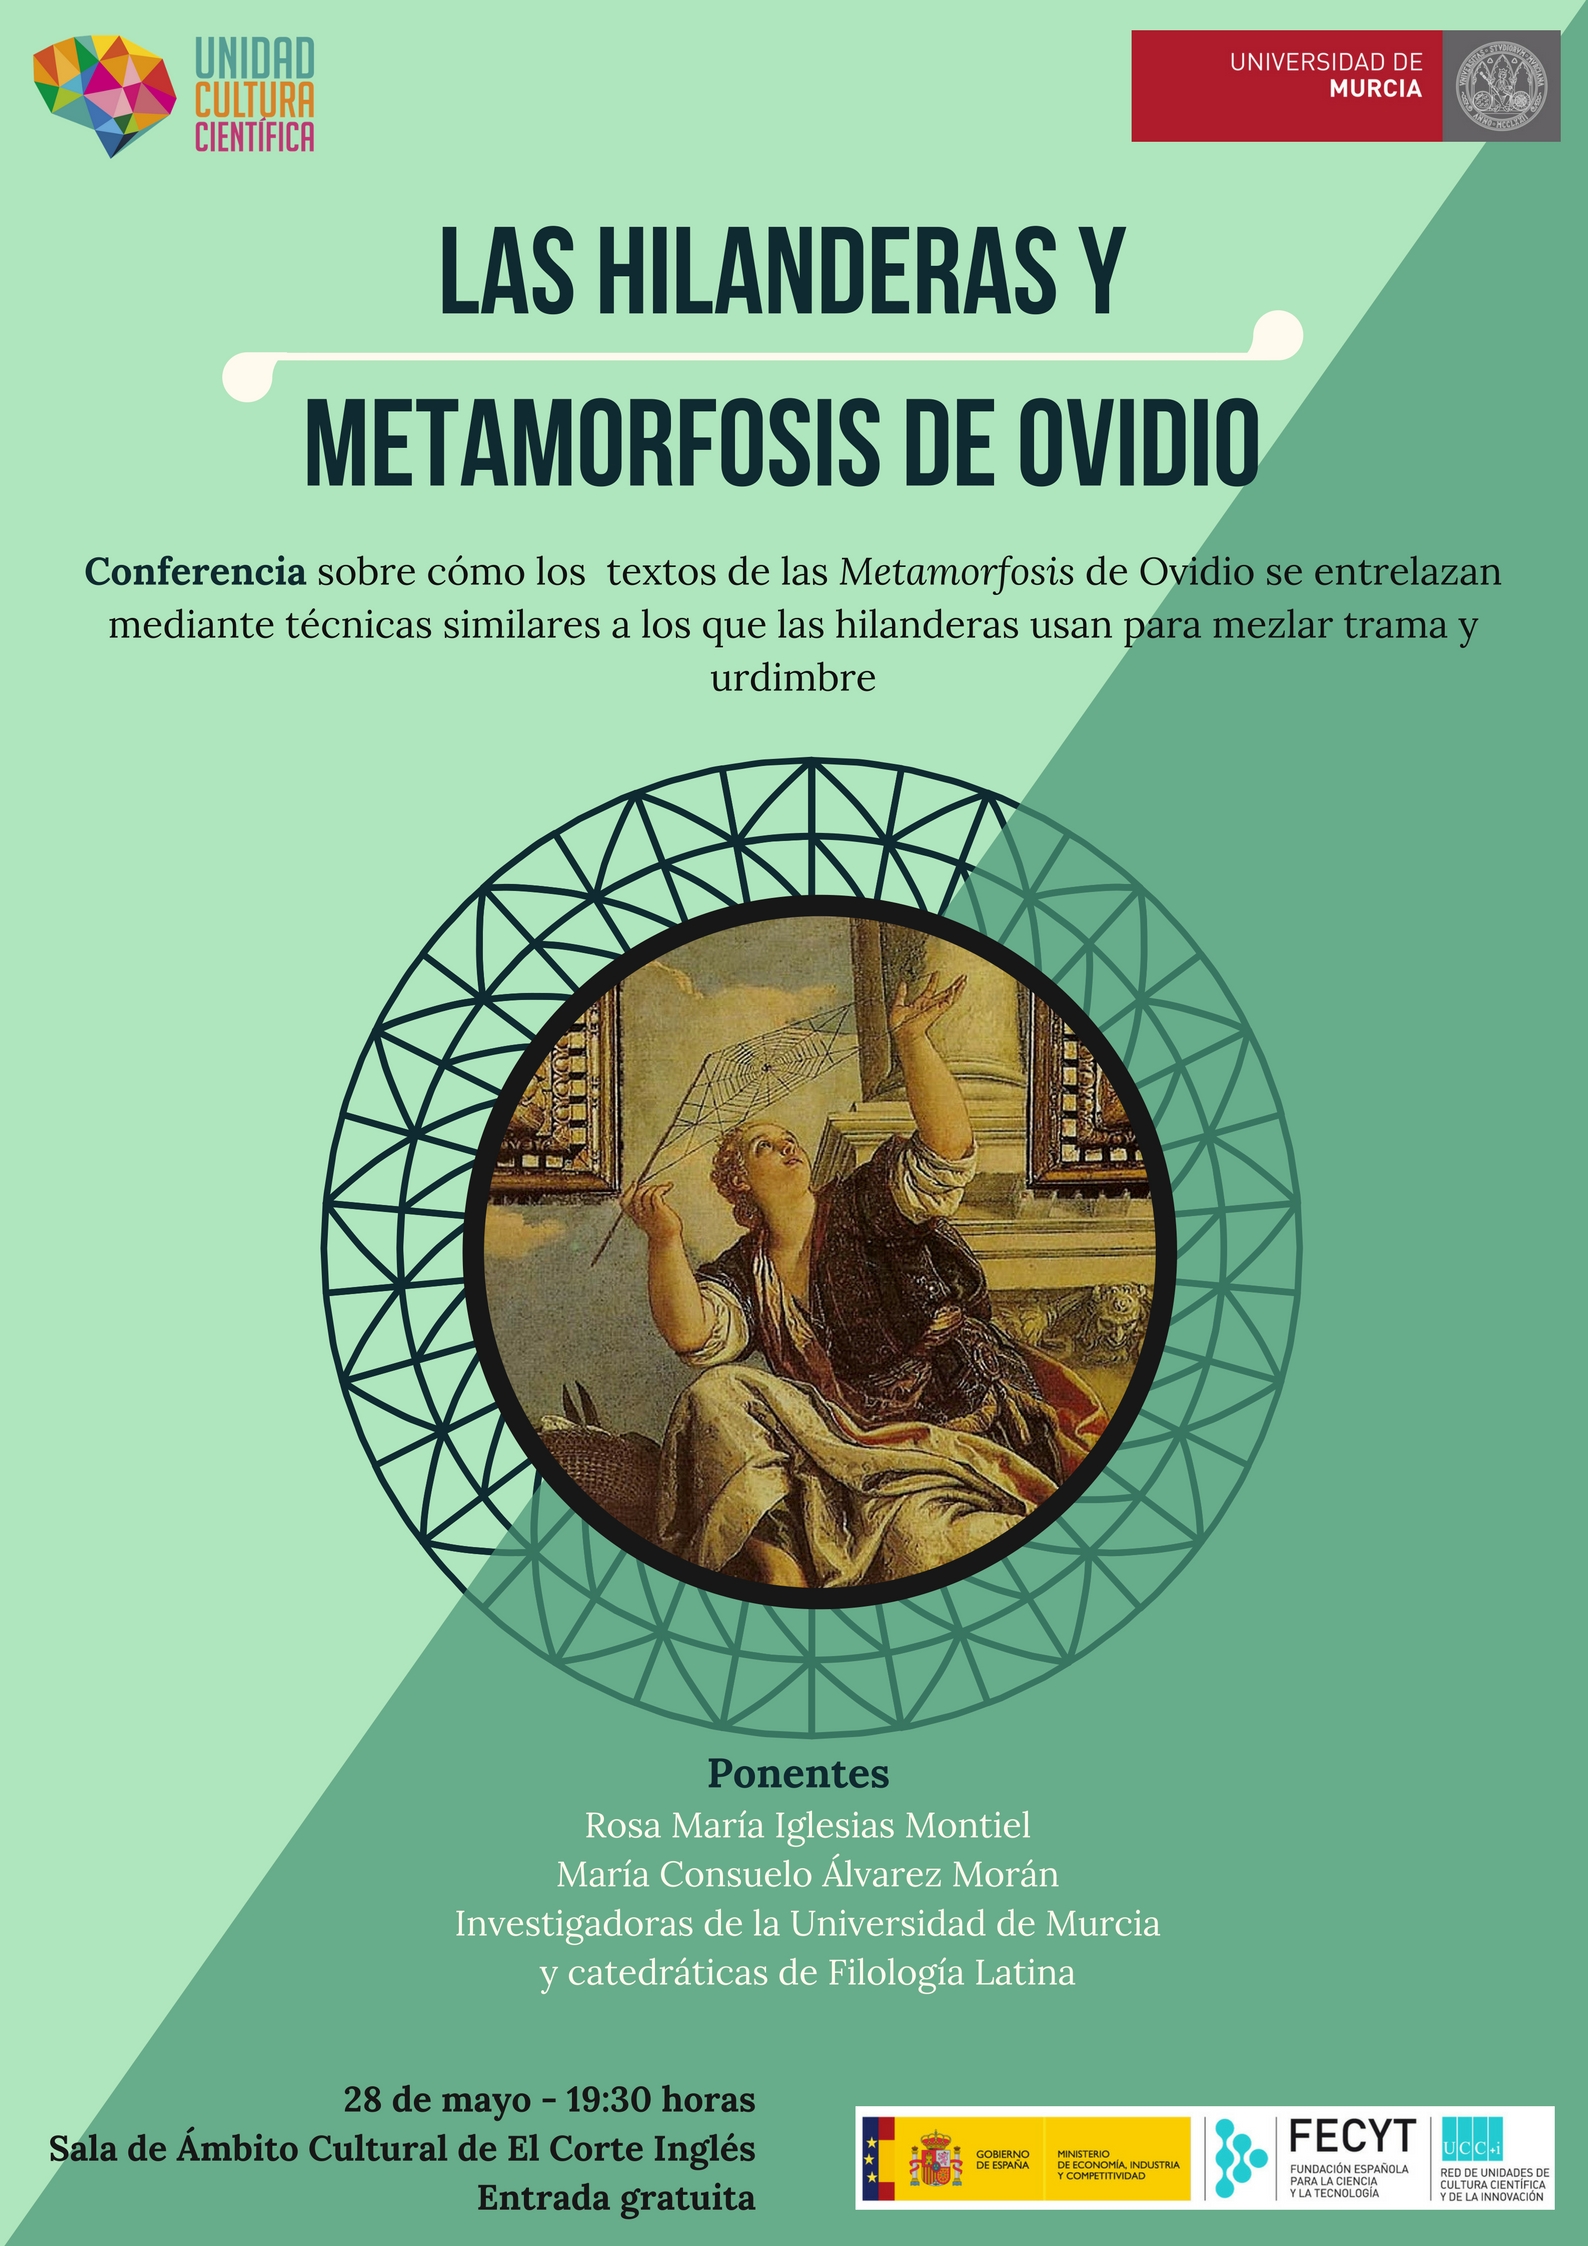 Las Hilanderas y Metamorfosis de Ovidio